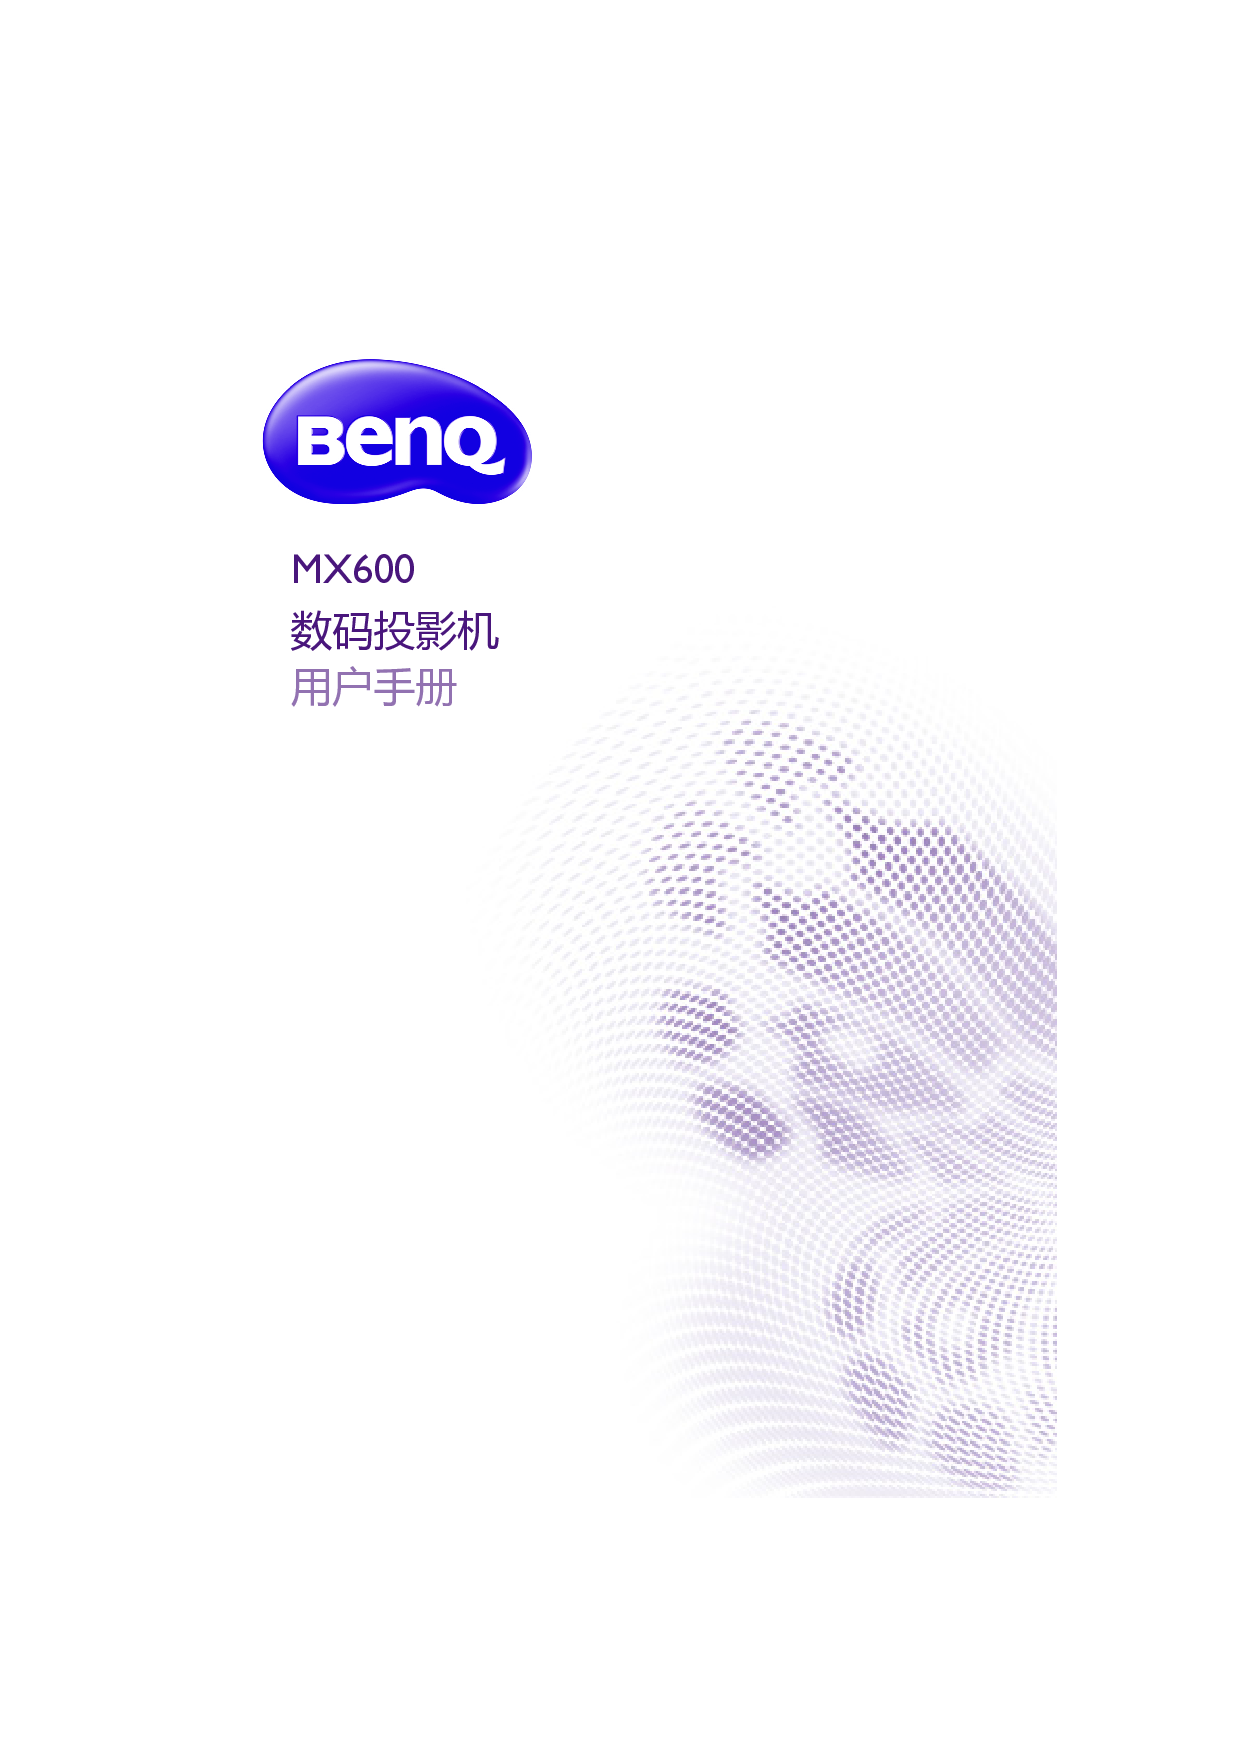 明基 Benq MX600 用户手册 封面